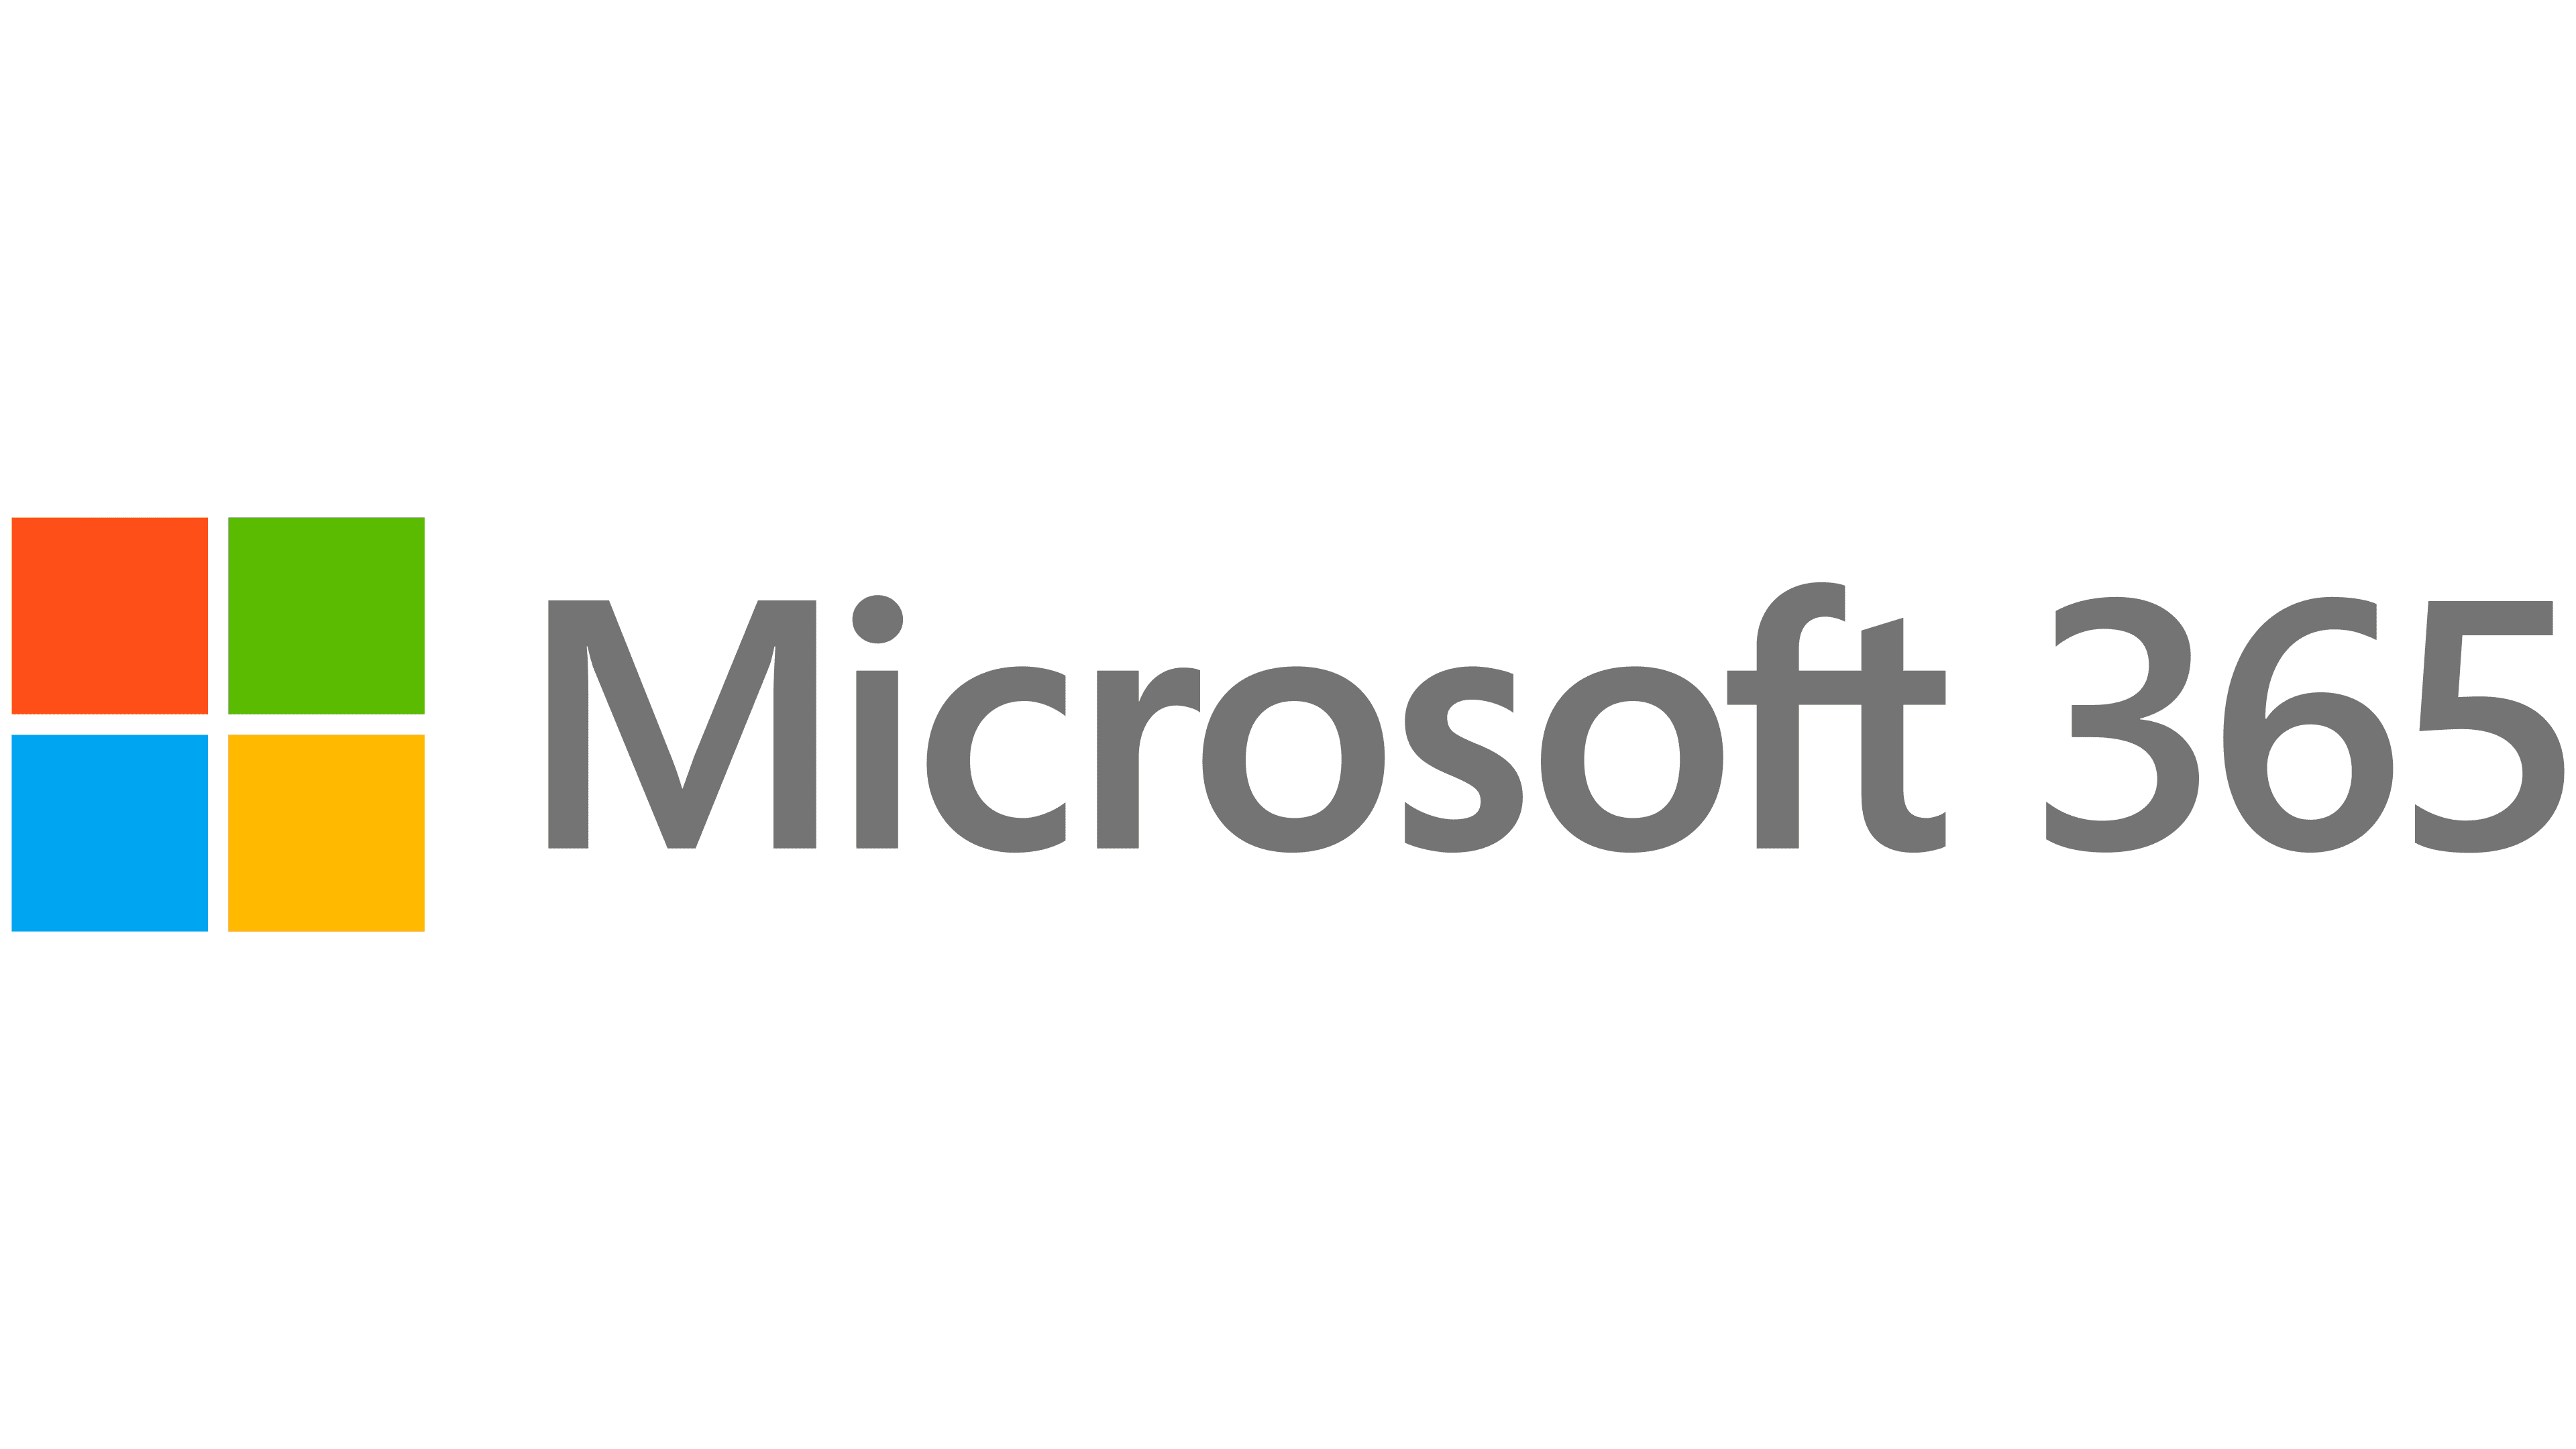 Microsoft Office 365 Logo histoire, signification de l'emblème